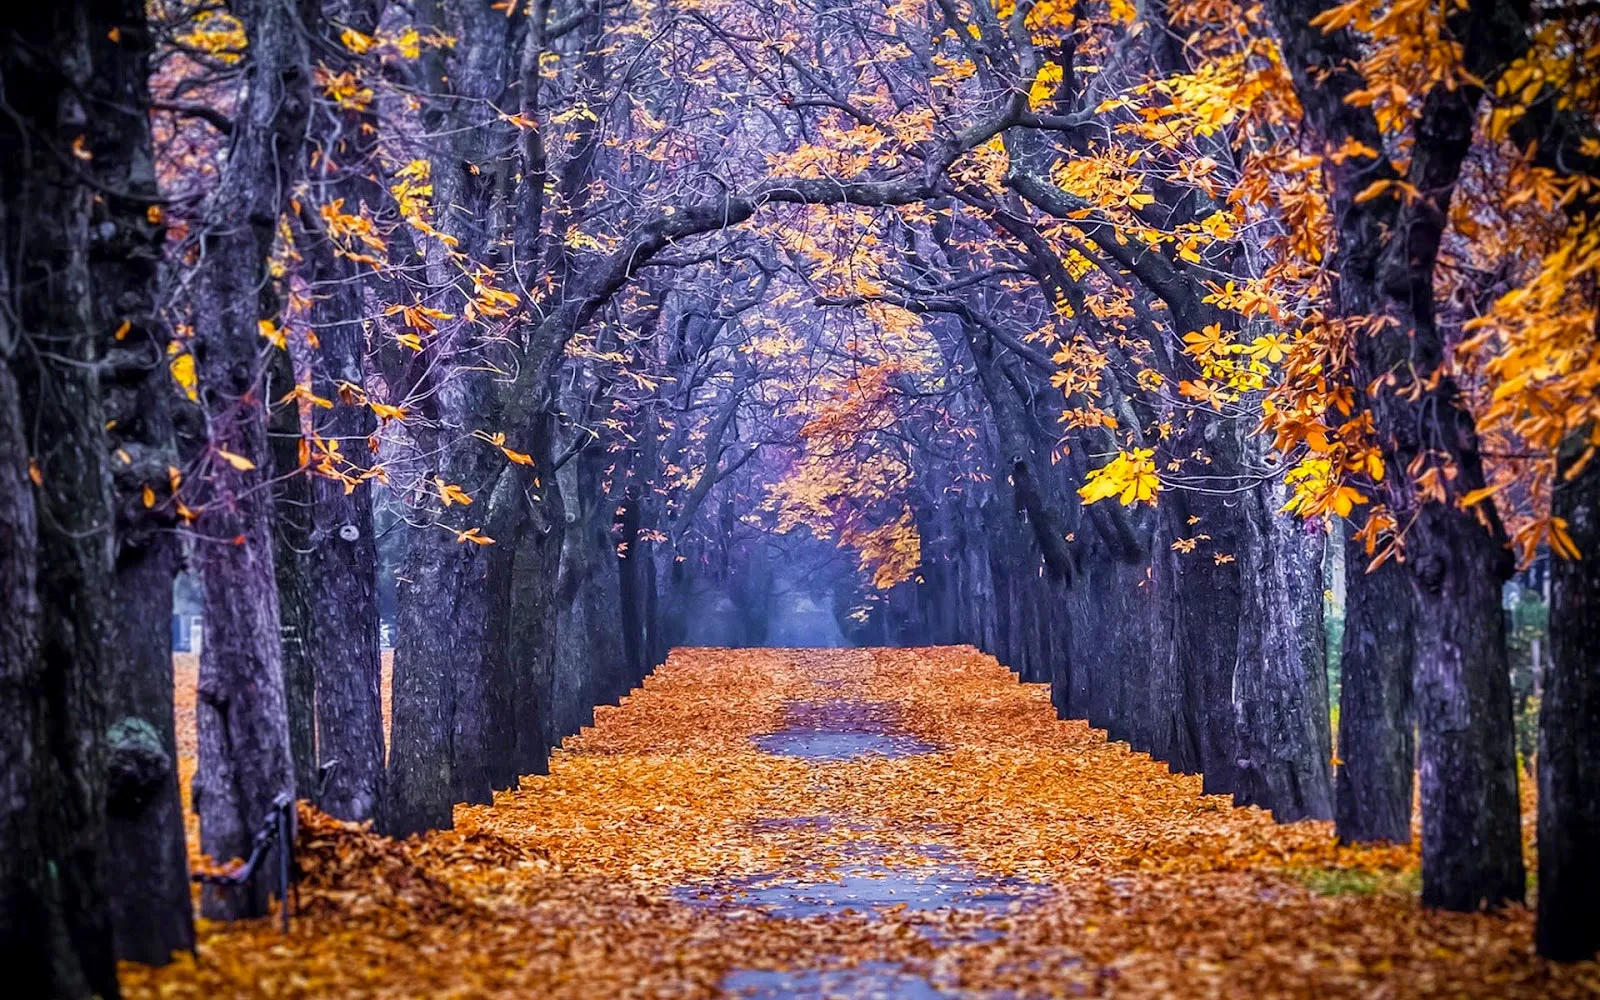 Grote bomen langs de weg met veel gele herfstbladeren op de grond